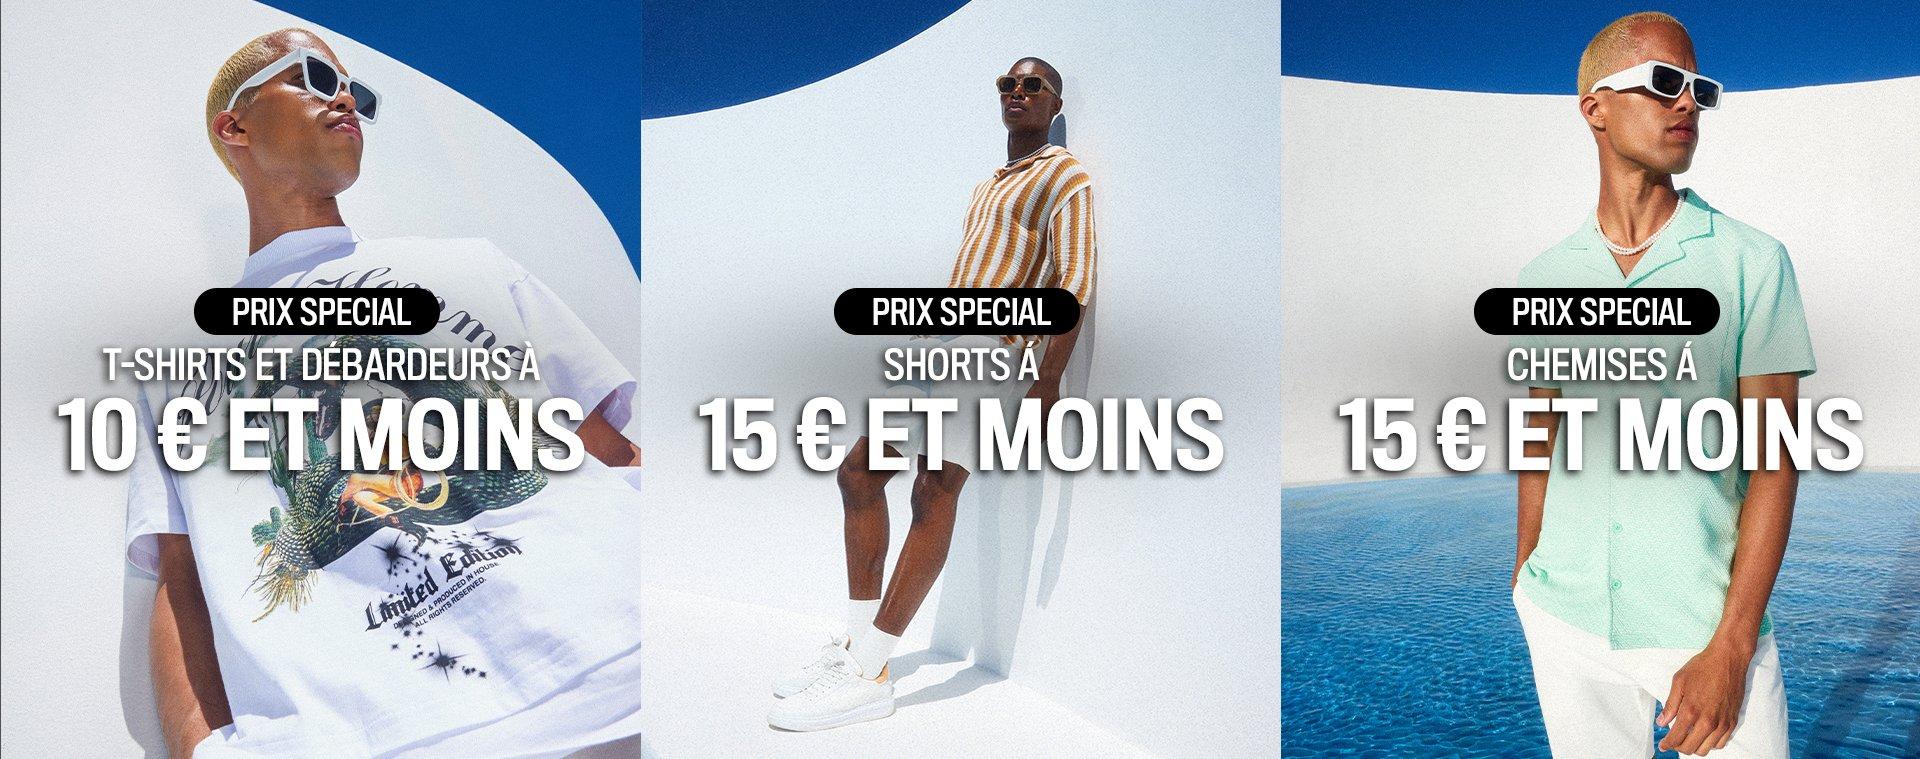 Tees 10€ shorts 15€ shirts €15